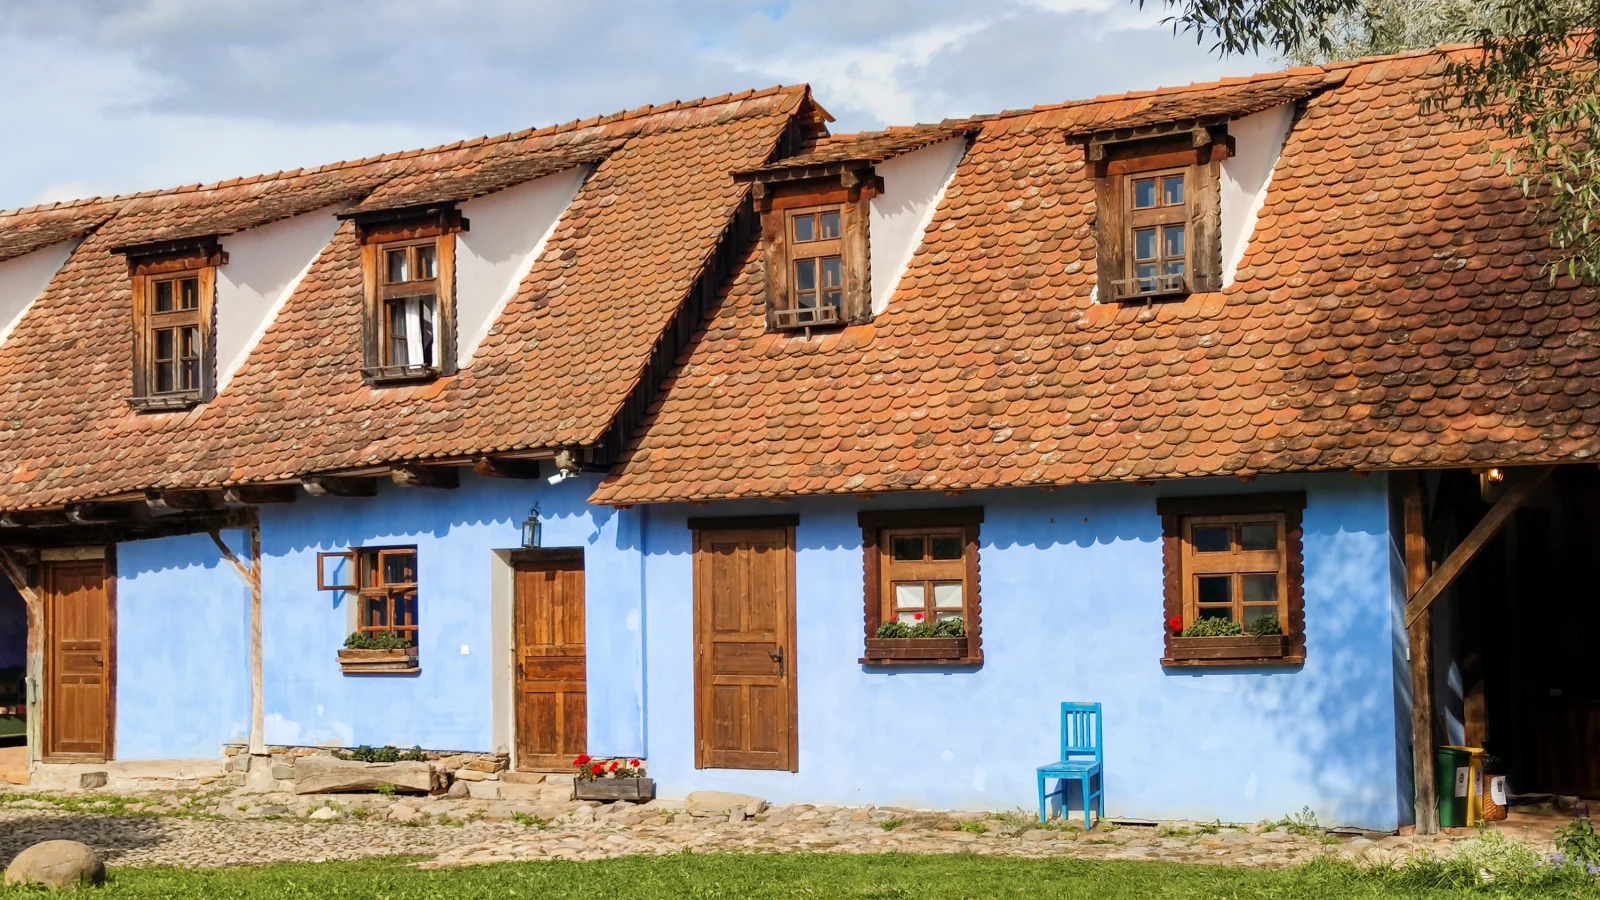 Viscri, the most popular Saxon village in Transylvania